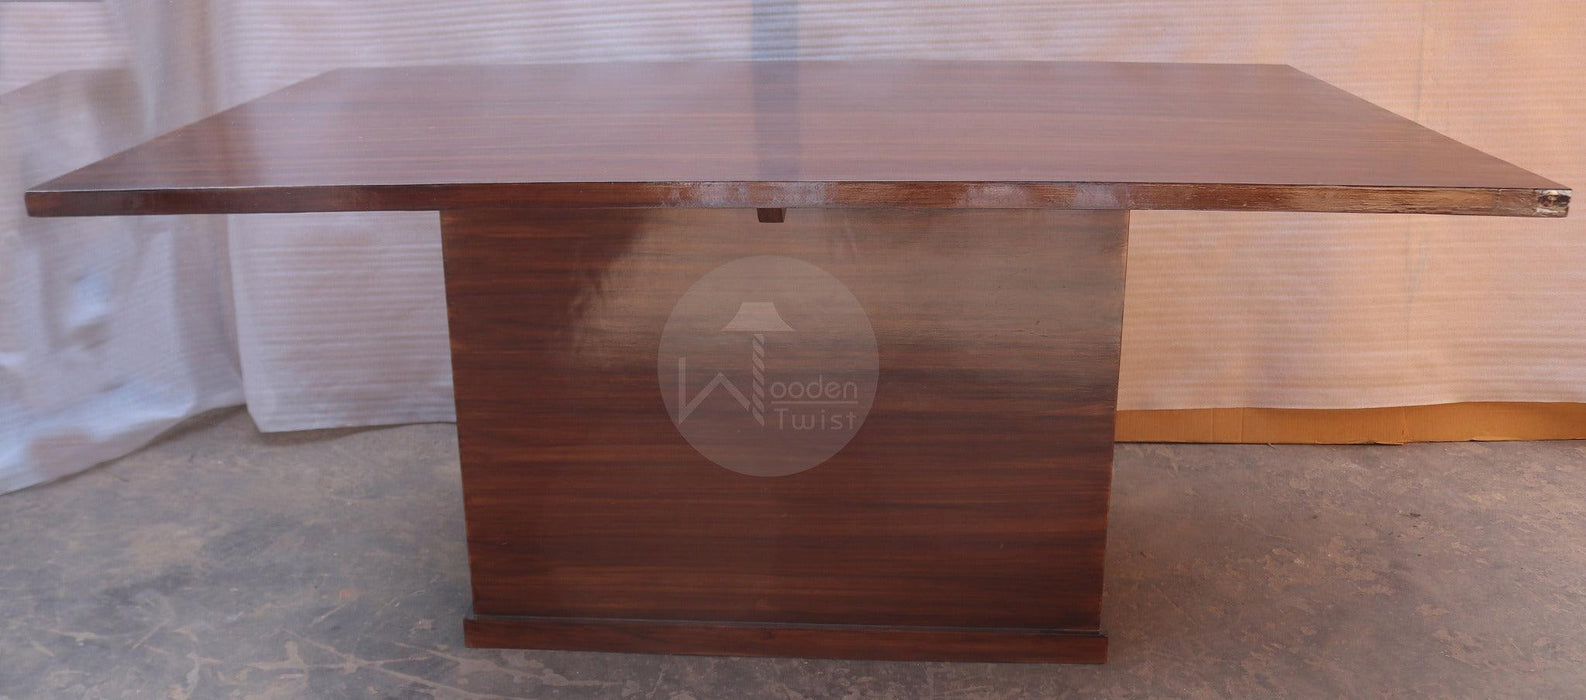 Premium Teak Wood 6 Seater Dining Table Set - WoodenTwist